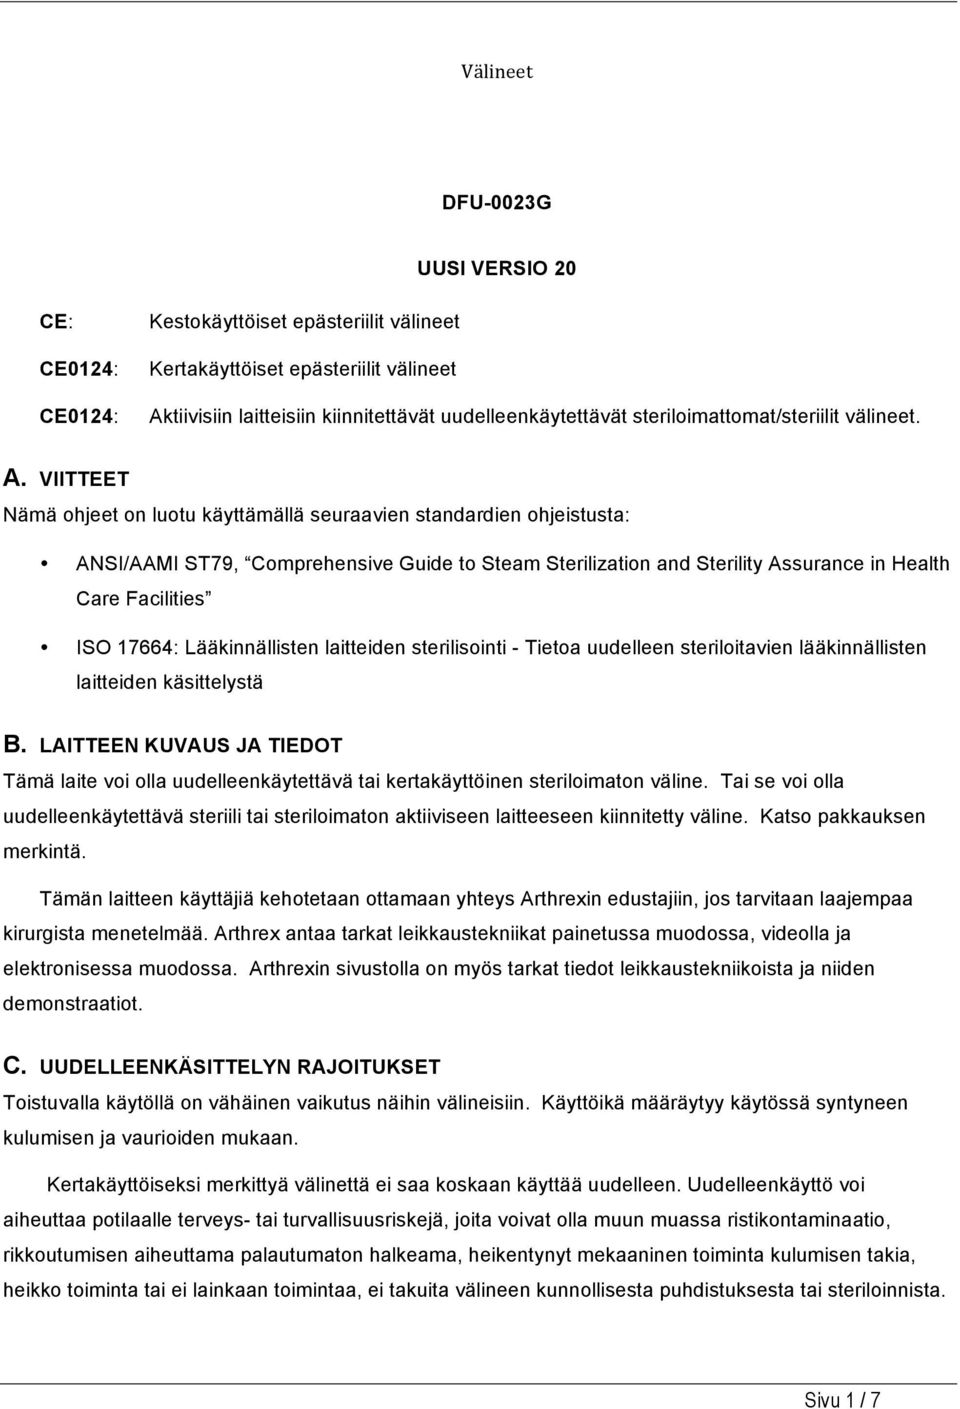 VIITTEET Nämä ohjeet on luotu käyttämällä seuraavien standardien ohjeistusta: ANSI/AAMI ST79, Comprehensive Guide to Steam Sterilization and Sterility Assurance in Health Care Facilities ISO 17664: